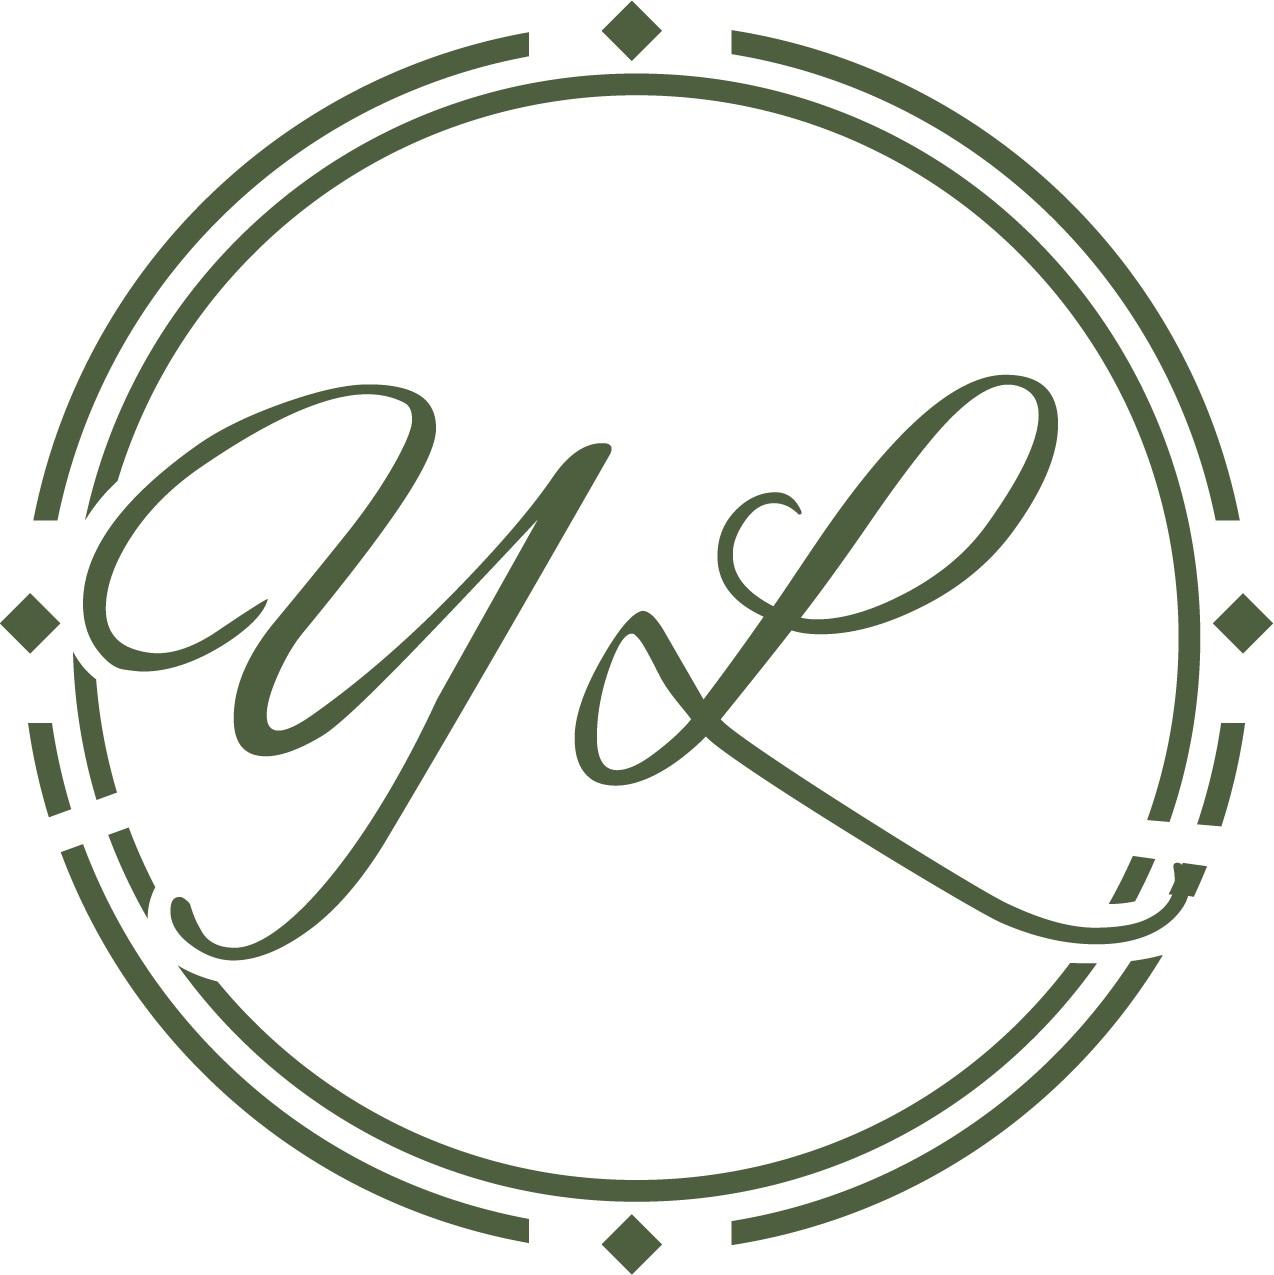 yl字母logo设计欣赏图片